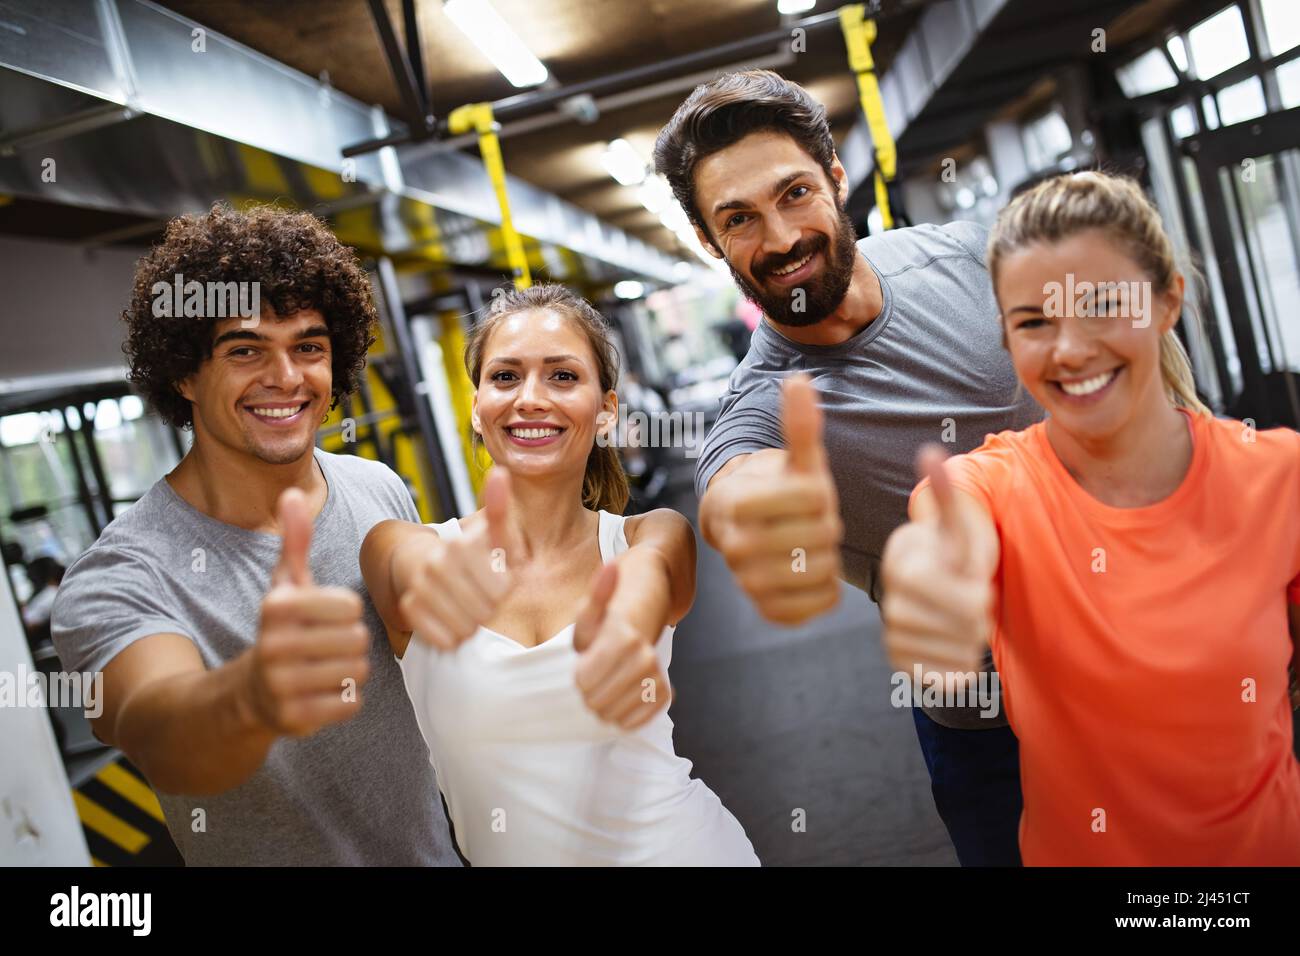 Portrait einer Gruppe von Menschen, die gemeinsam im Fitnessstudio trainieren Stockfoto